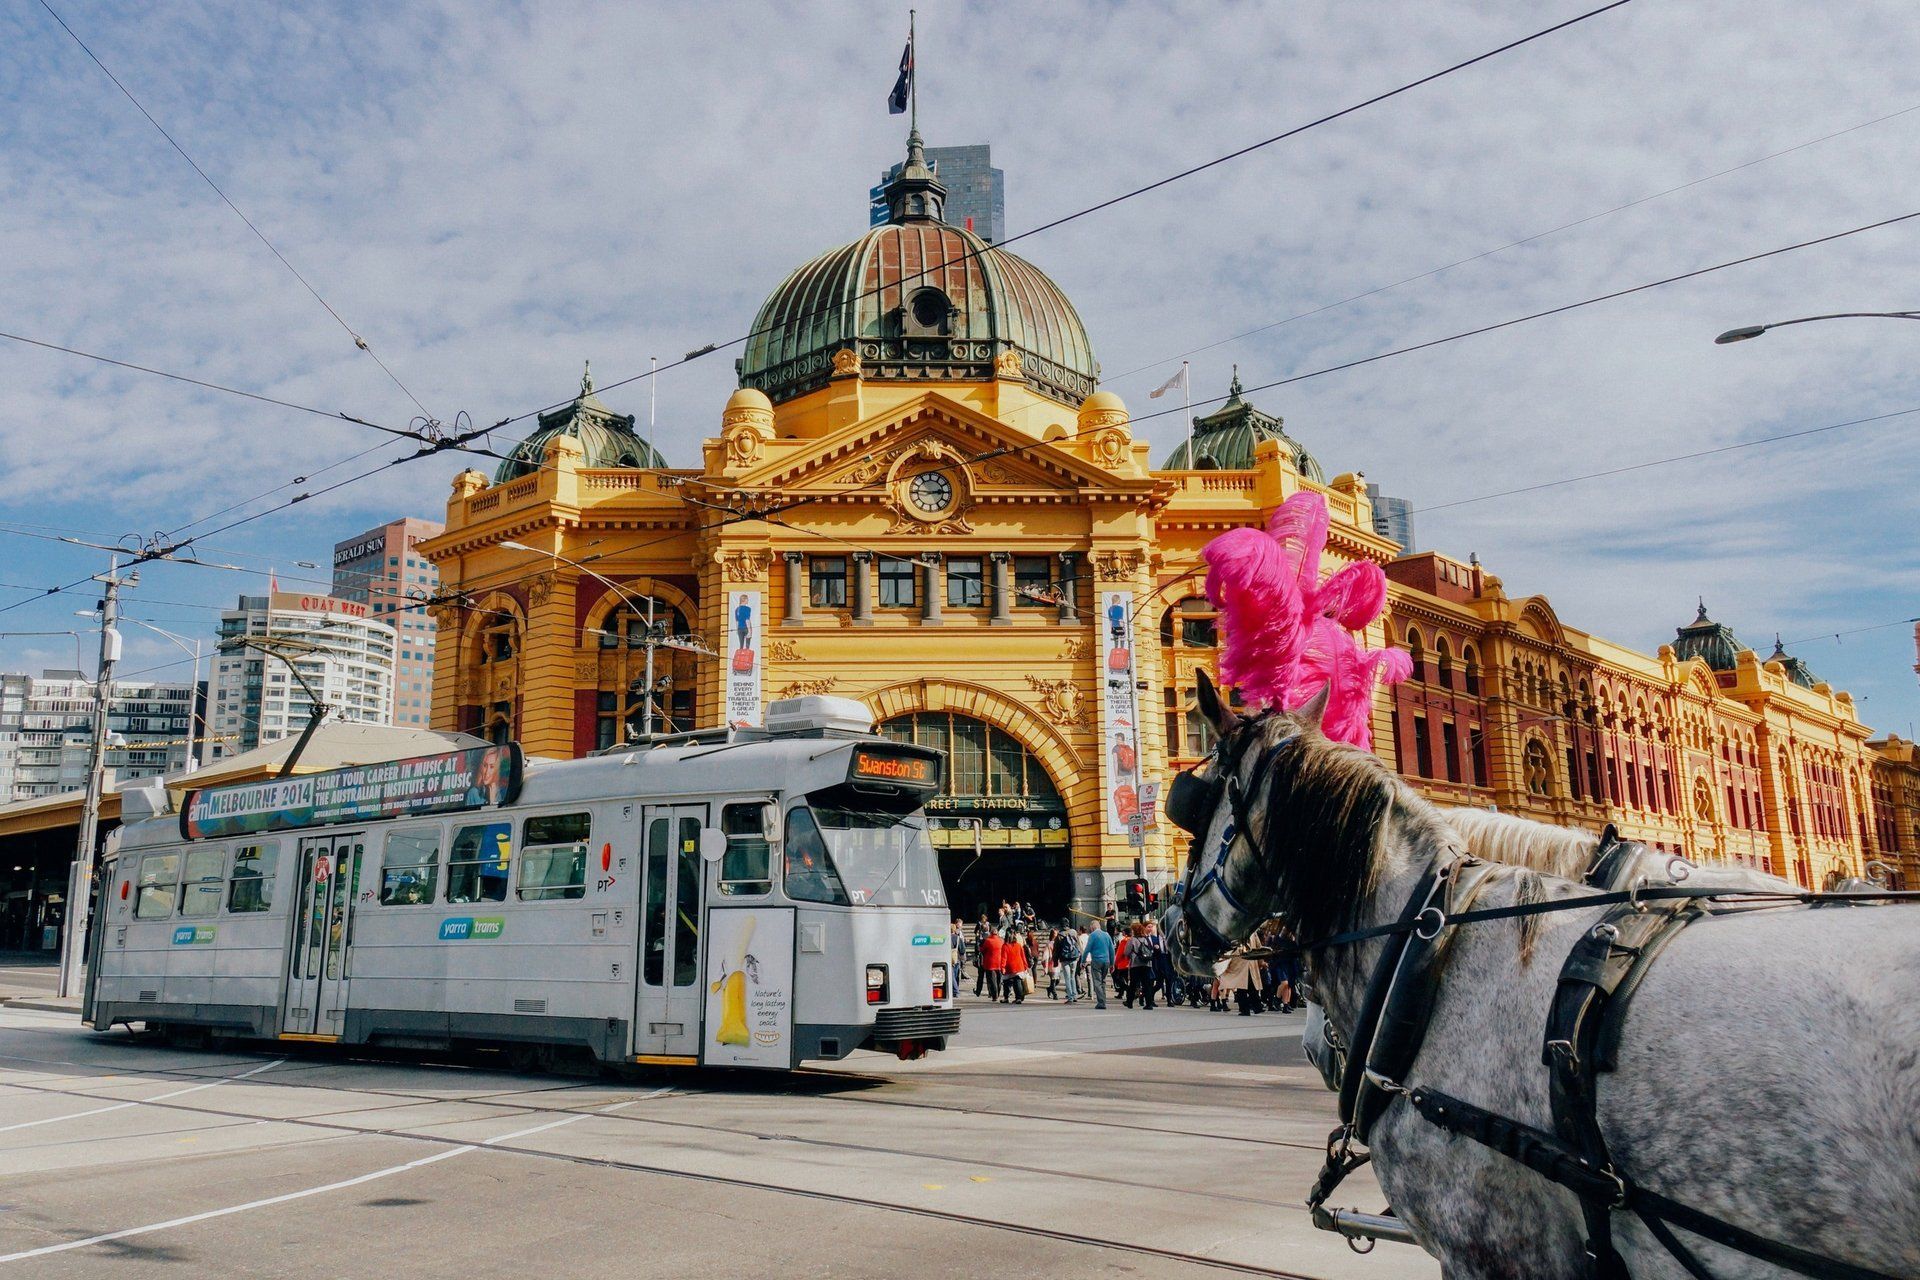 Image of Flinders Street station in Melbourne